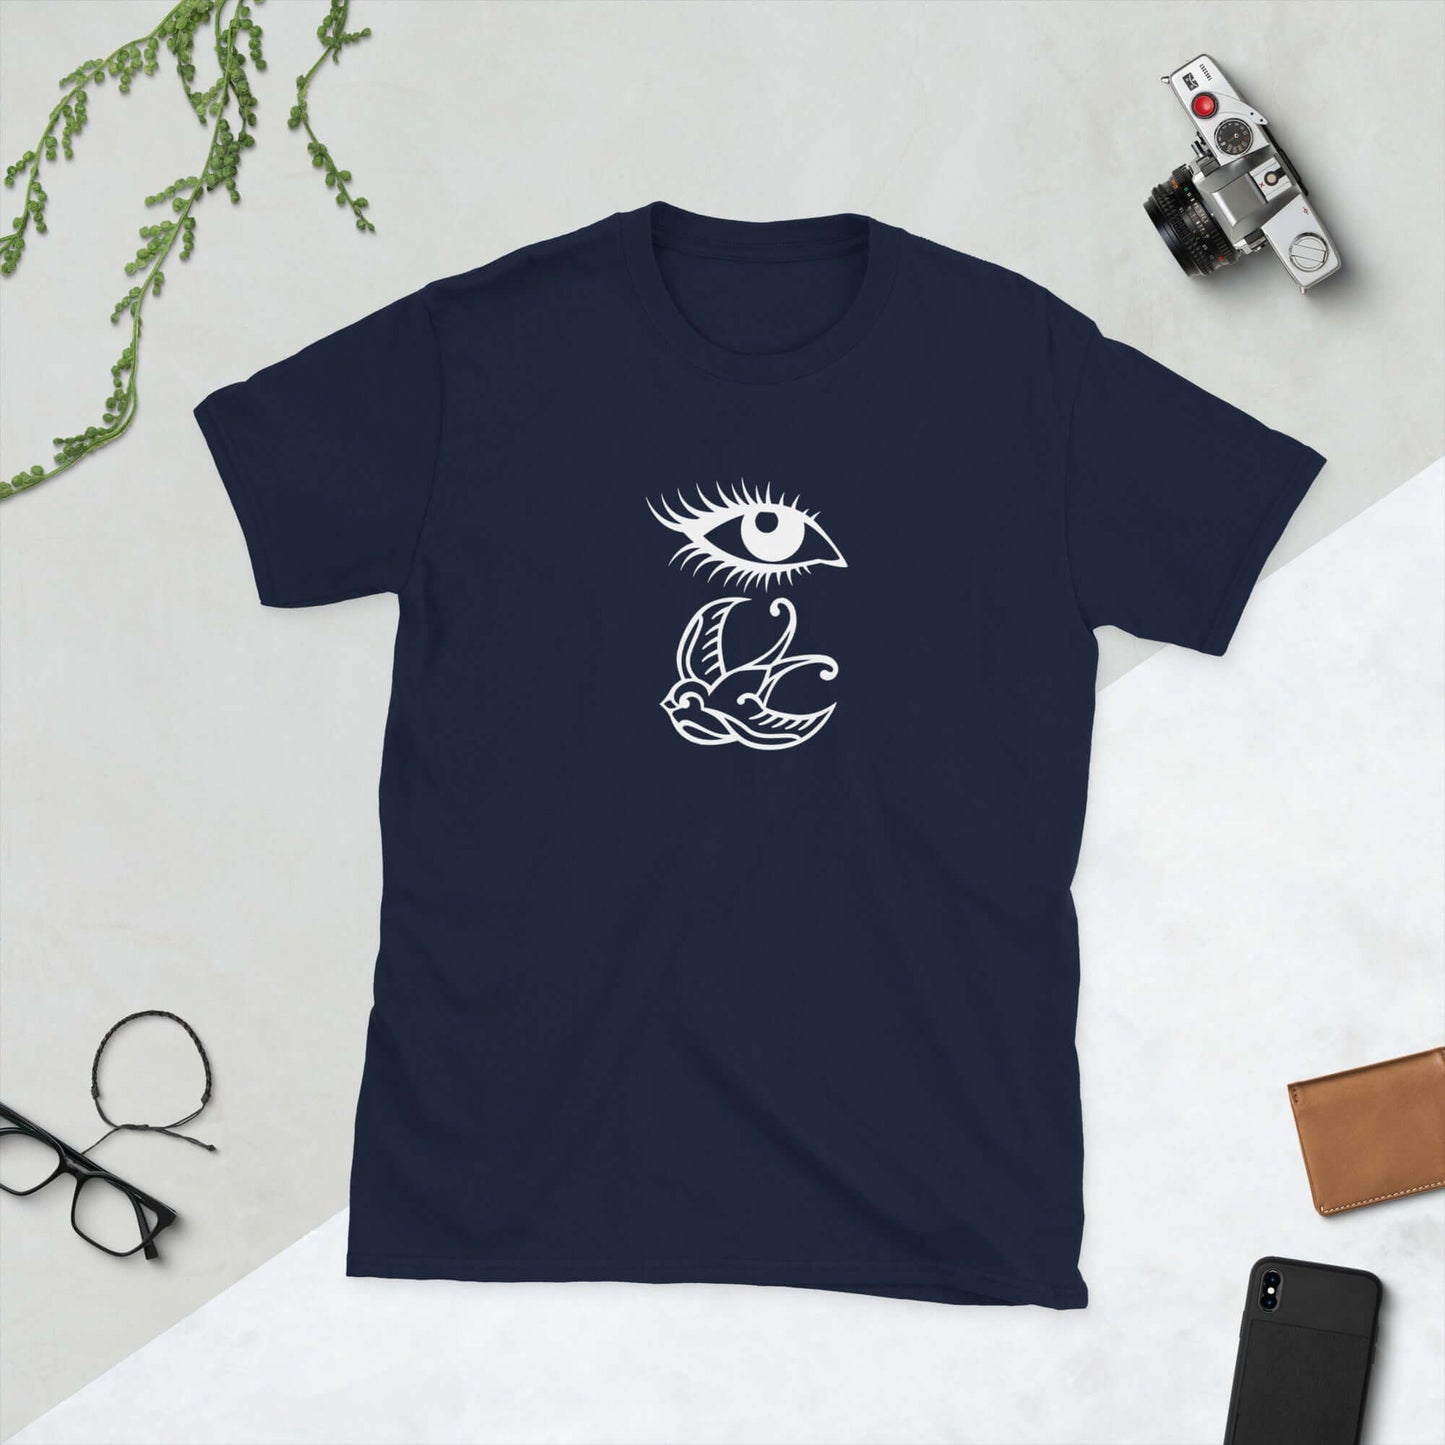 Swallower t-shirt